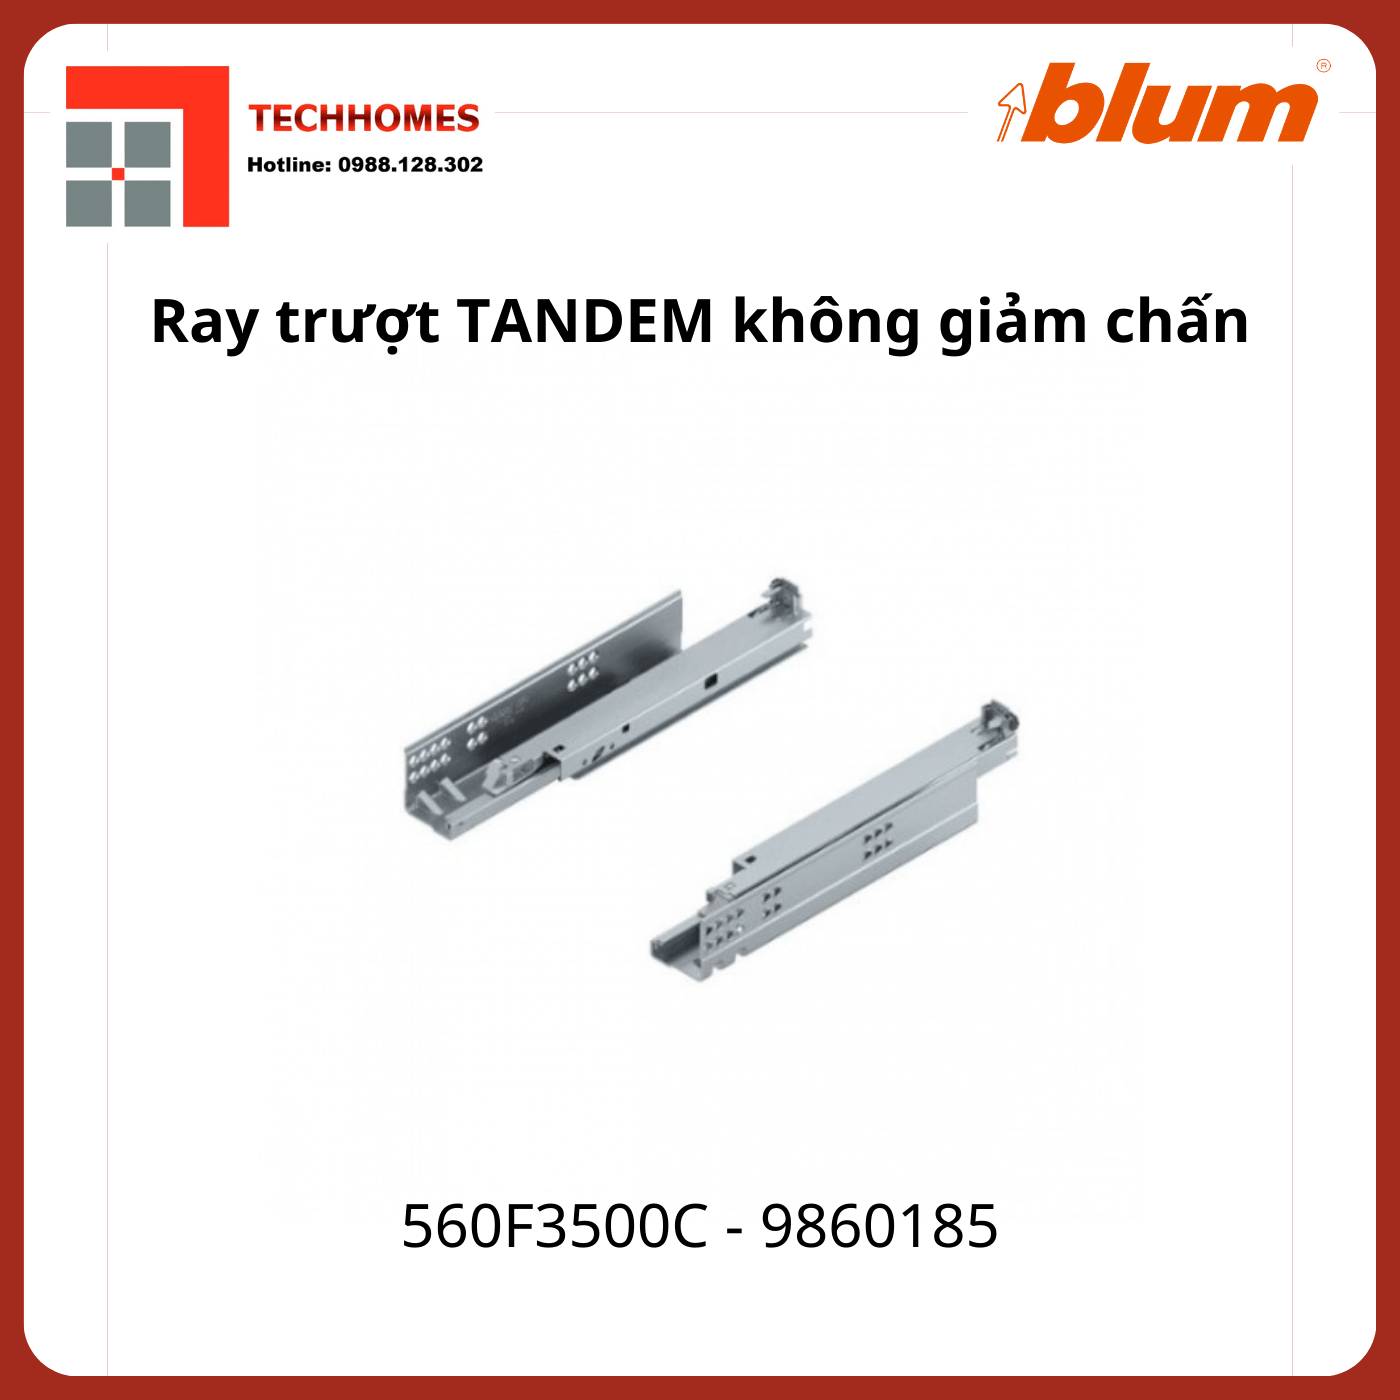 Ray trượt Blum TANDEM không giảm chấn 560F3500C, 9860185